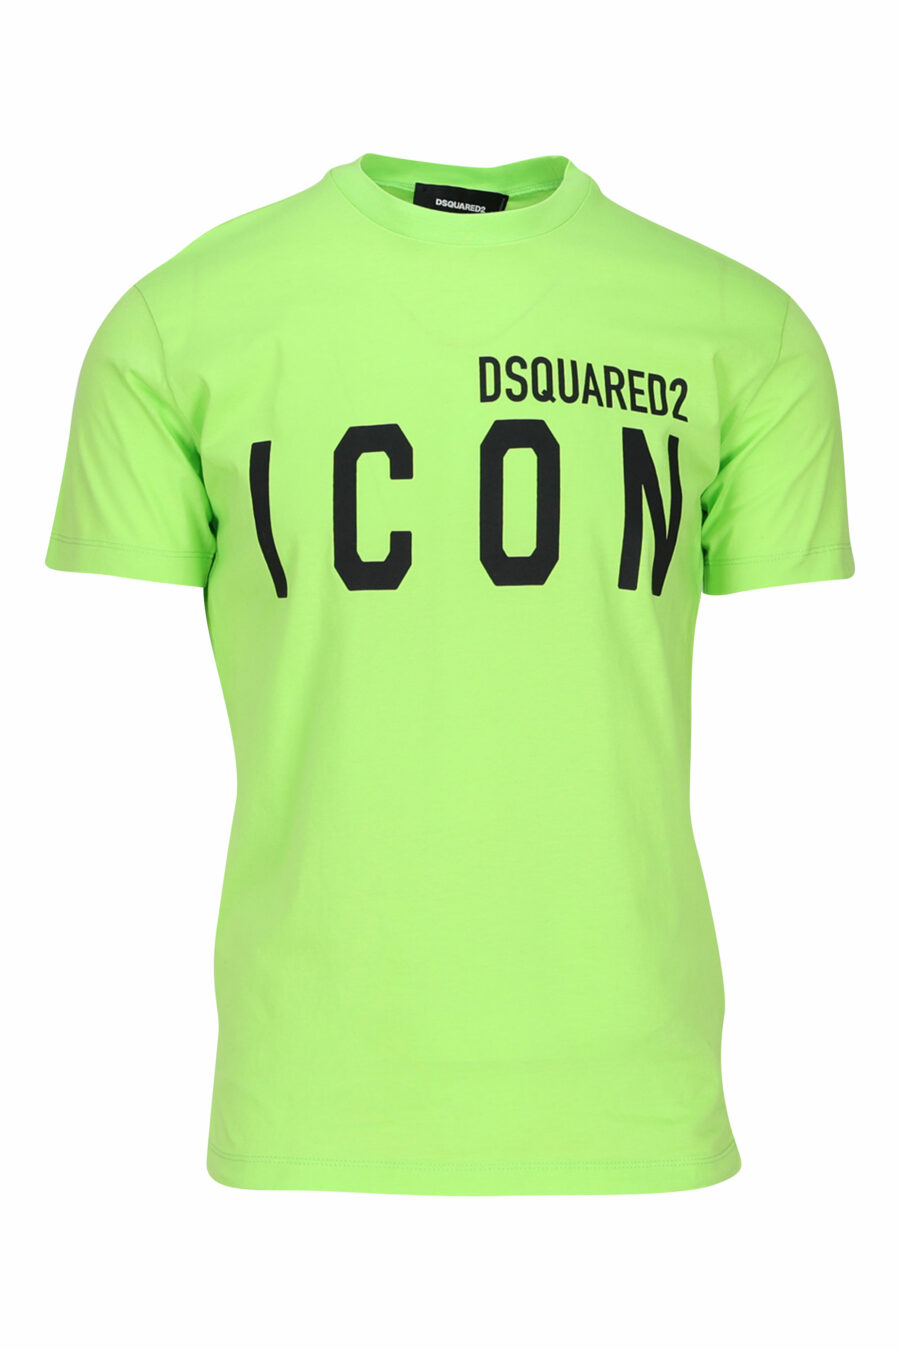 T-shirt verde lima com maxilogo "icon" preto - 8054148035594